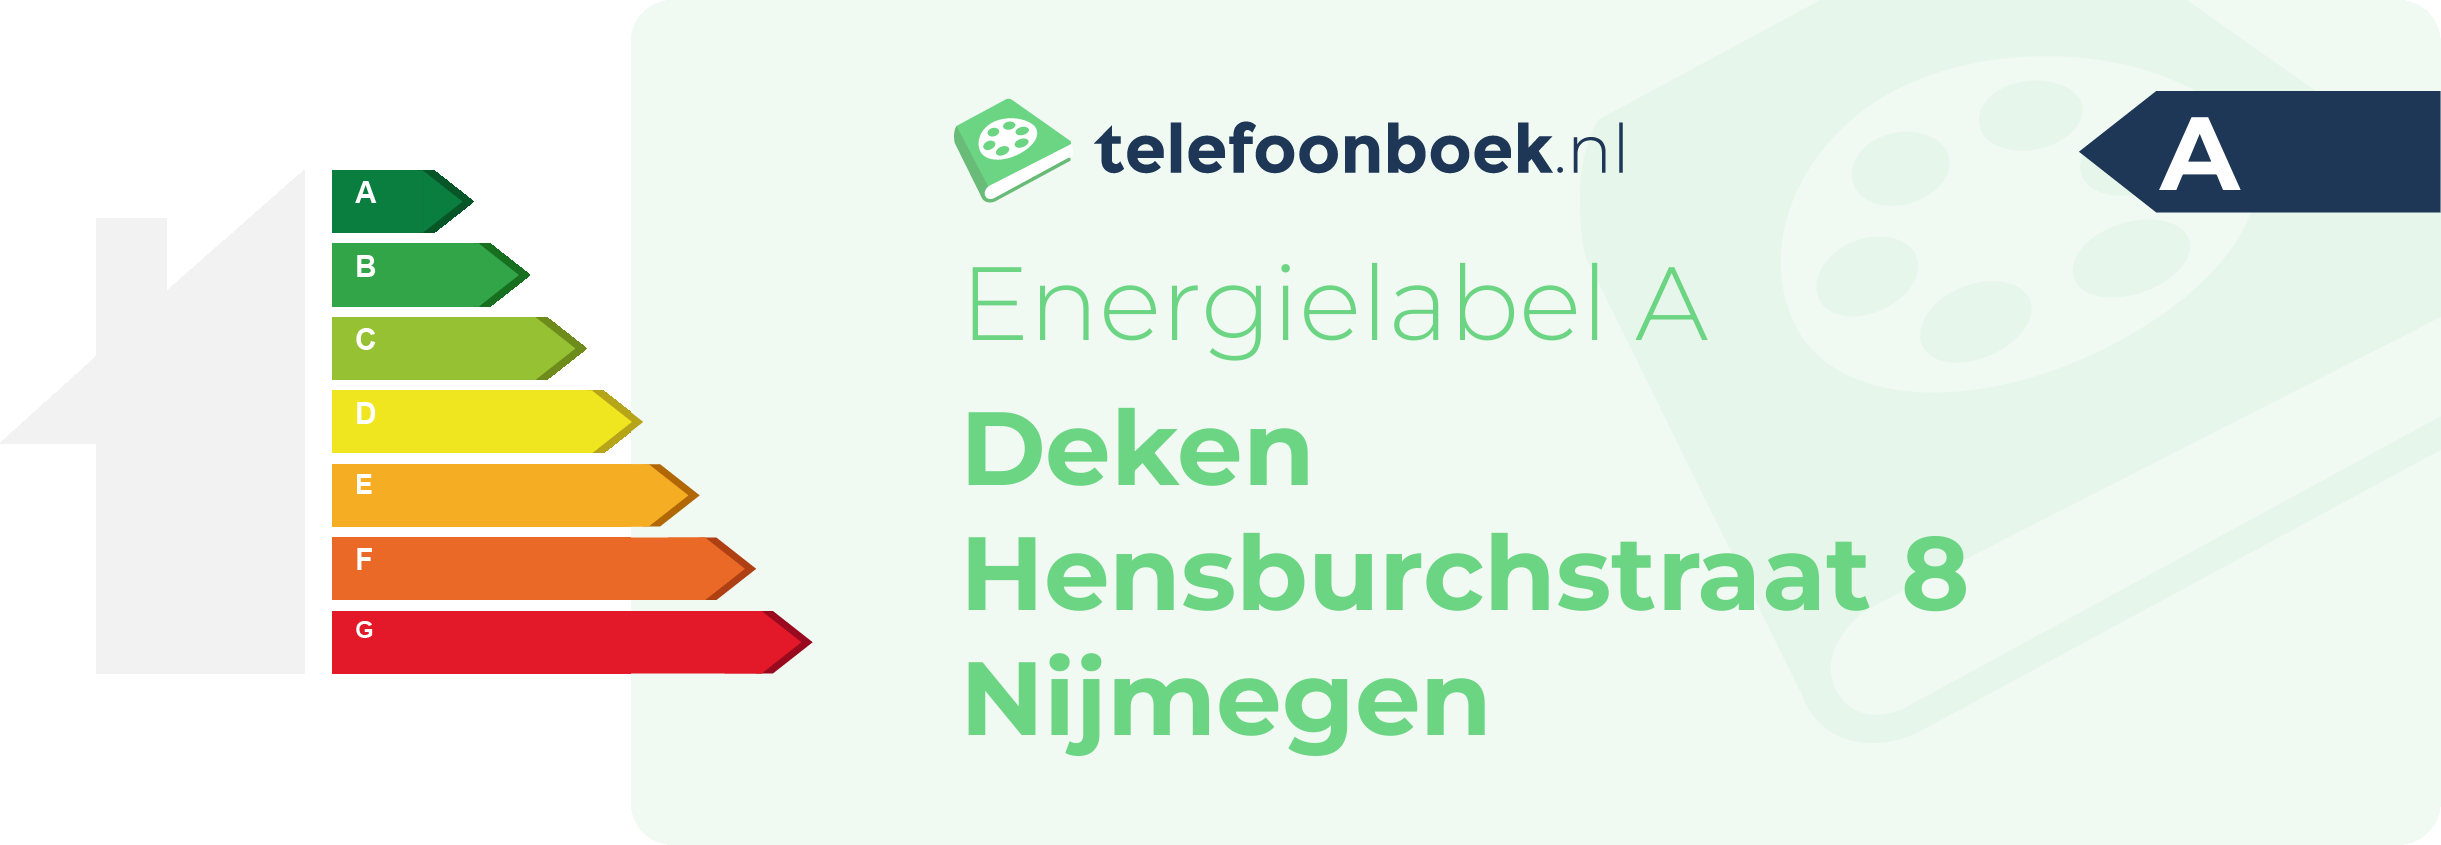 Energielabel Deken Hensburchstraat 8 Nijmegen